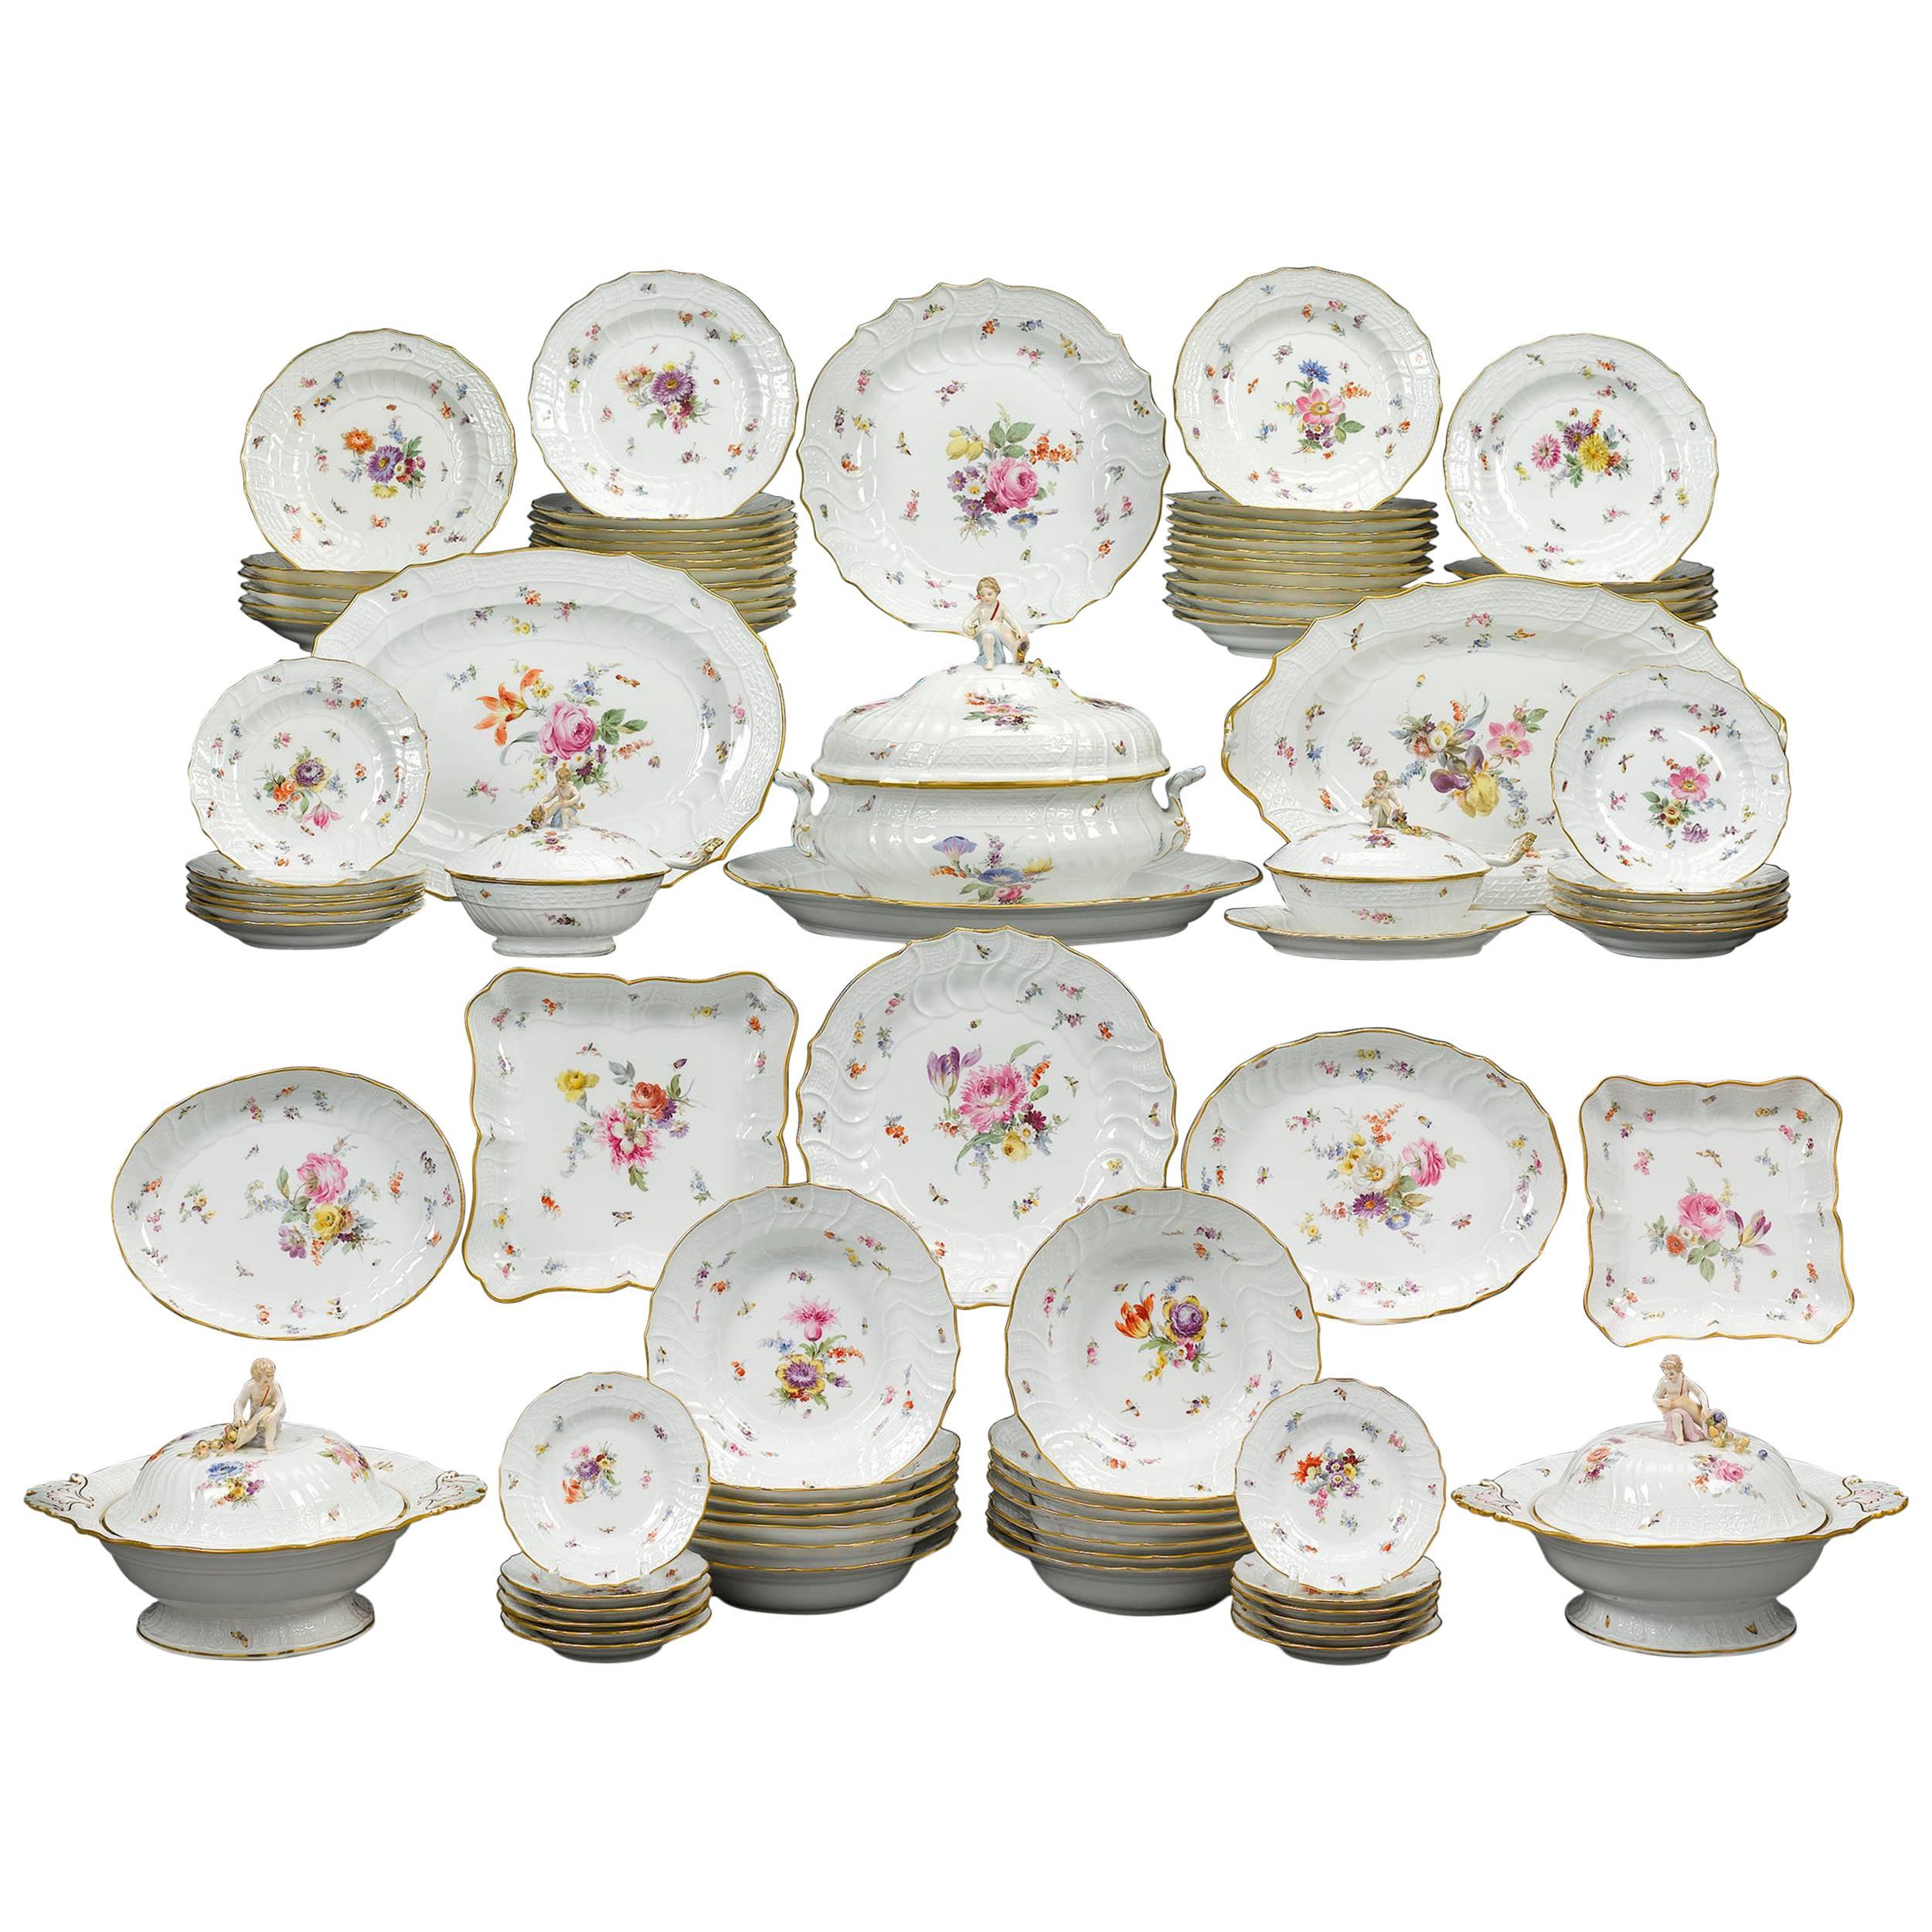 Meissen Porcelain Dinner Service, 92 Pieces